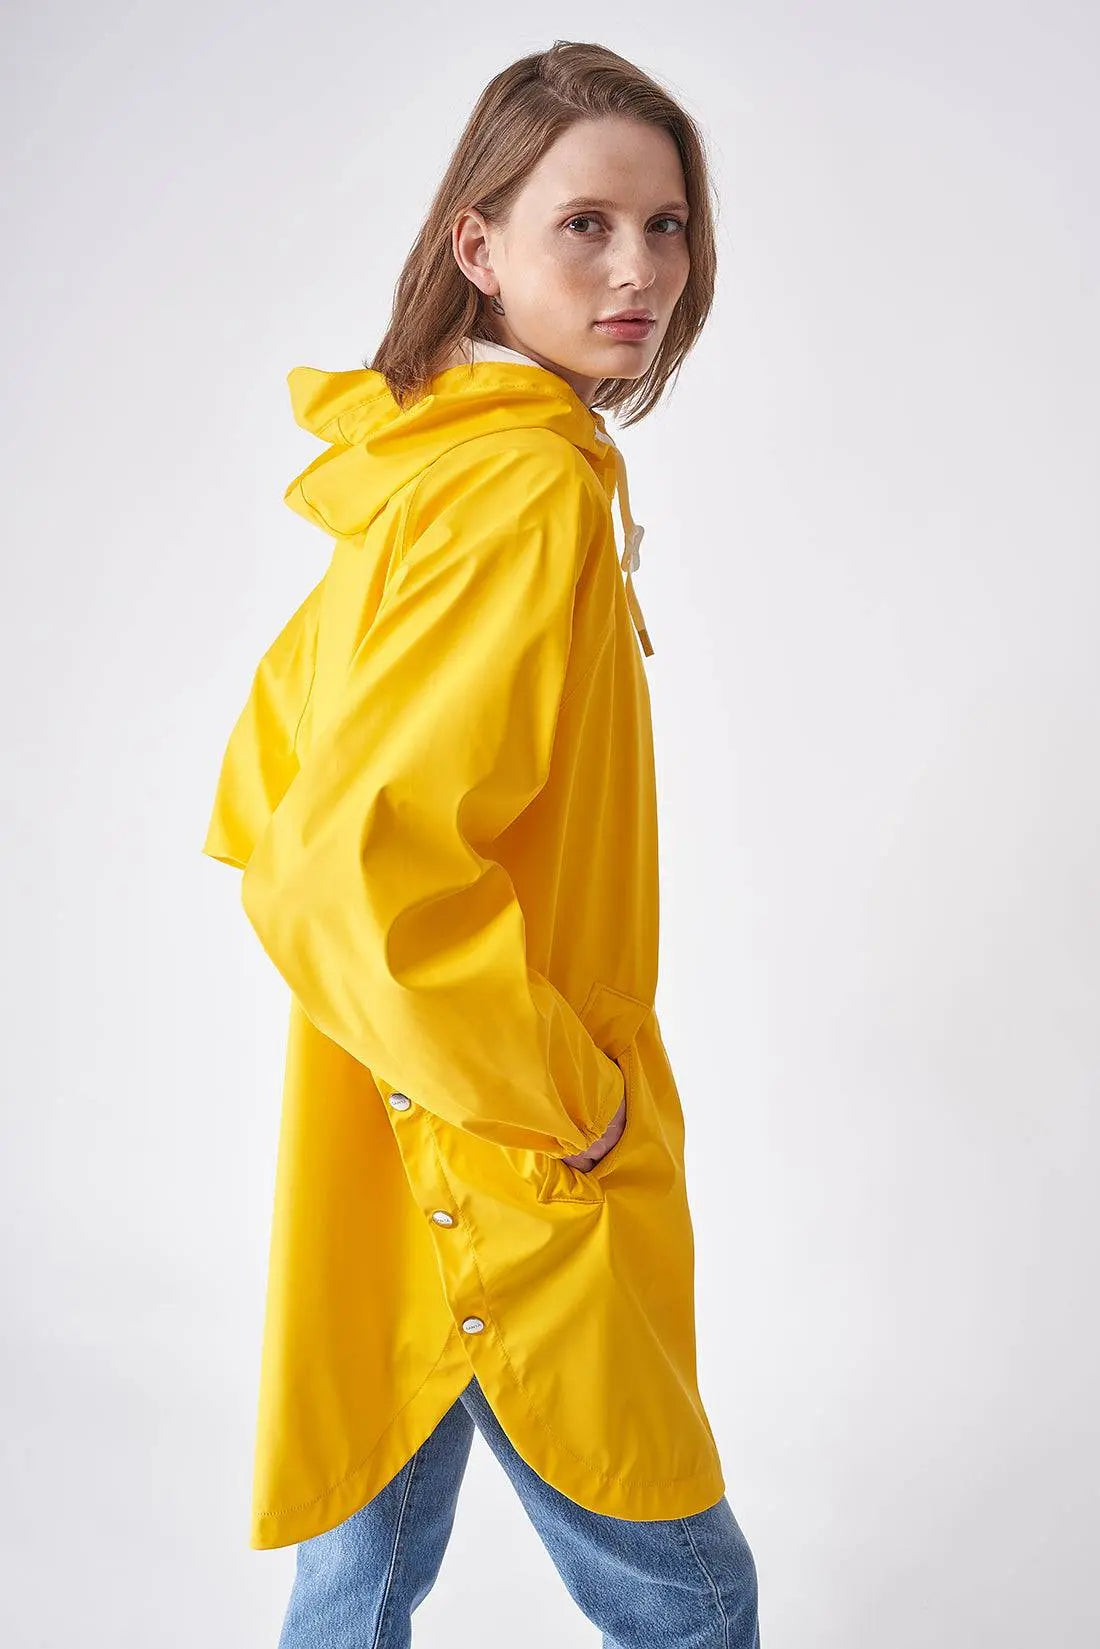 SKY. Chubasquero impermeable tipo capa amarillo unisex Tantä. – Tantä  Rainwear